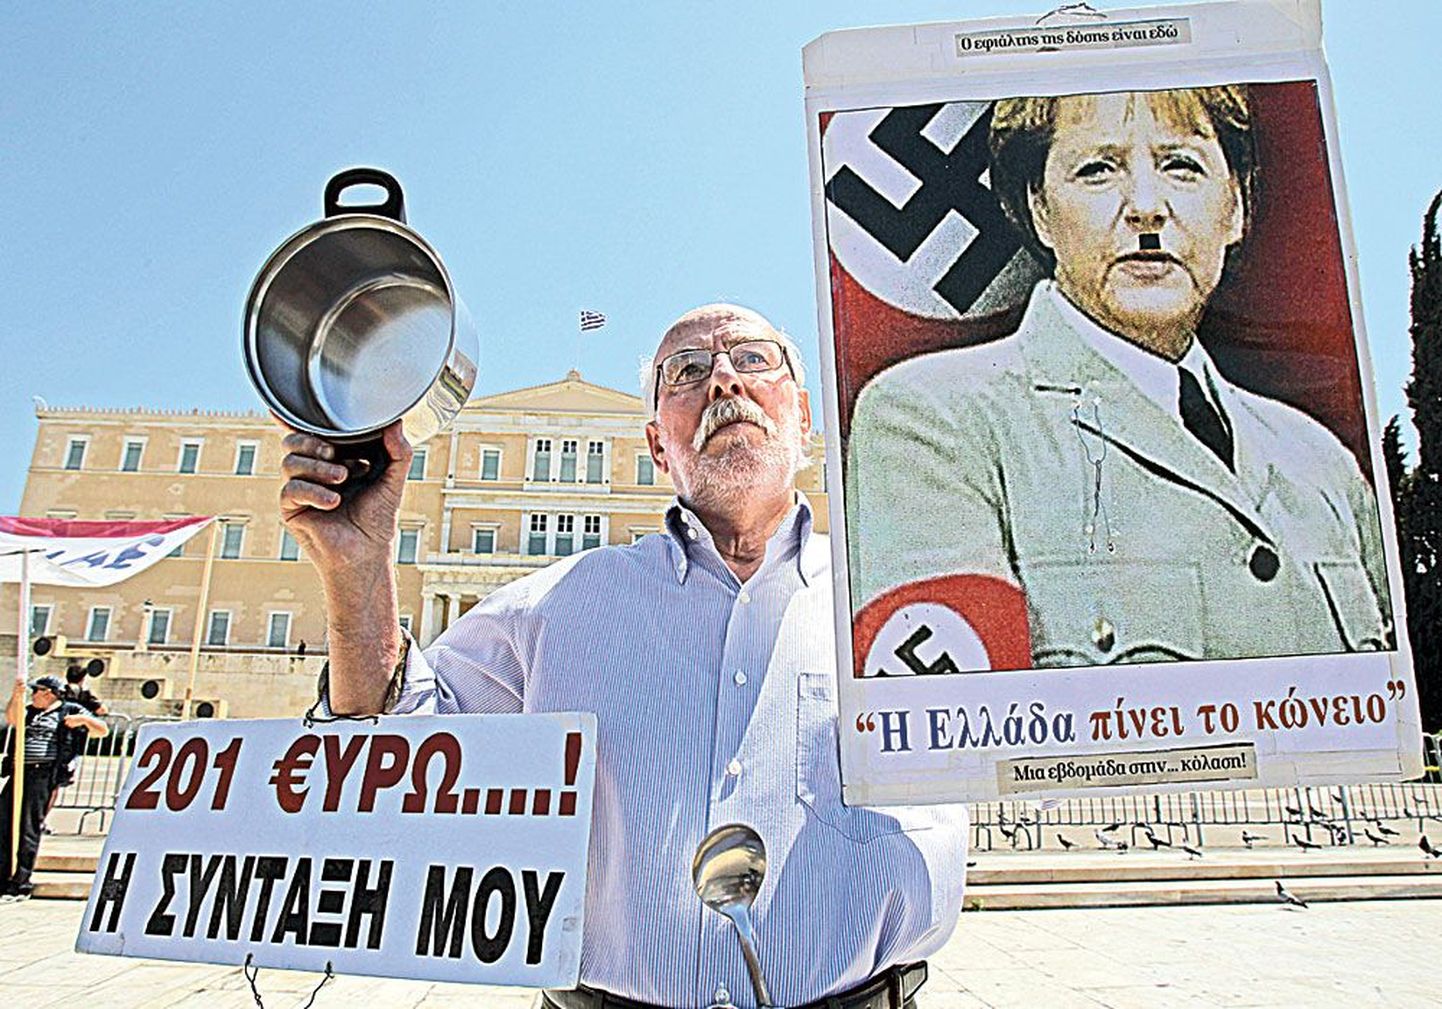 Kreeka protestija plakat võrdleb Saksa kantslerit Angela Merkelit Adolf Hitleriga. Alexander Gaulandi sõnul tõestab kreeklaste viha sakslaste vastu, et euro Euroopat ei ühenda.